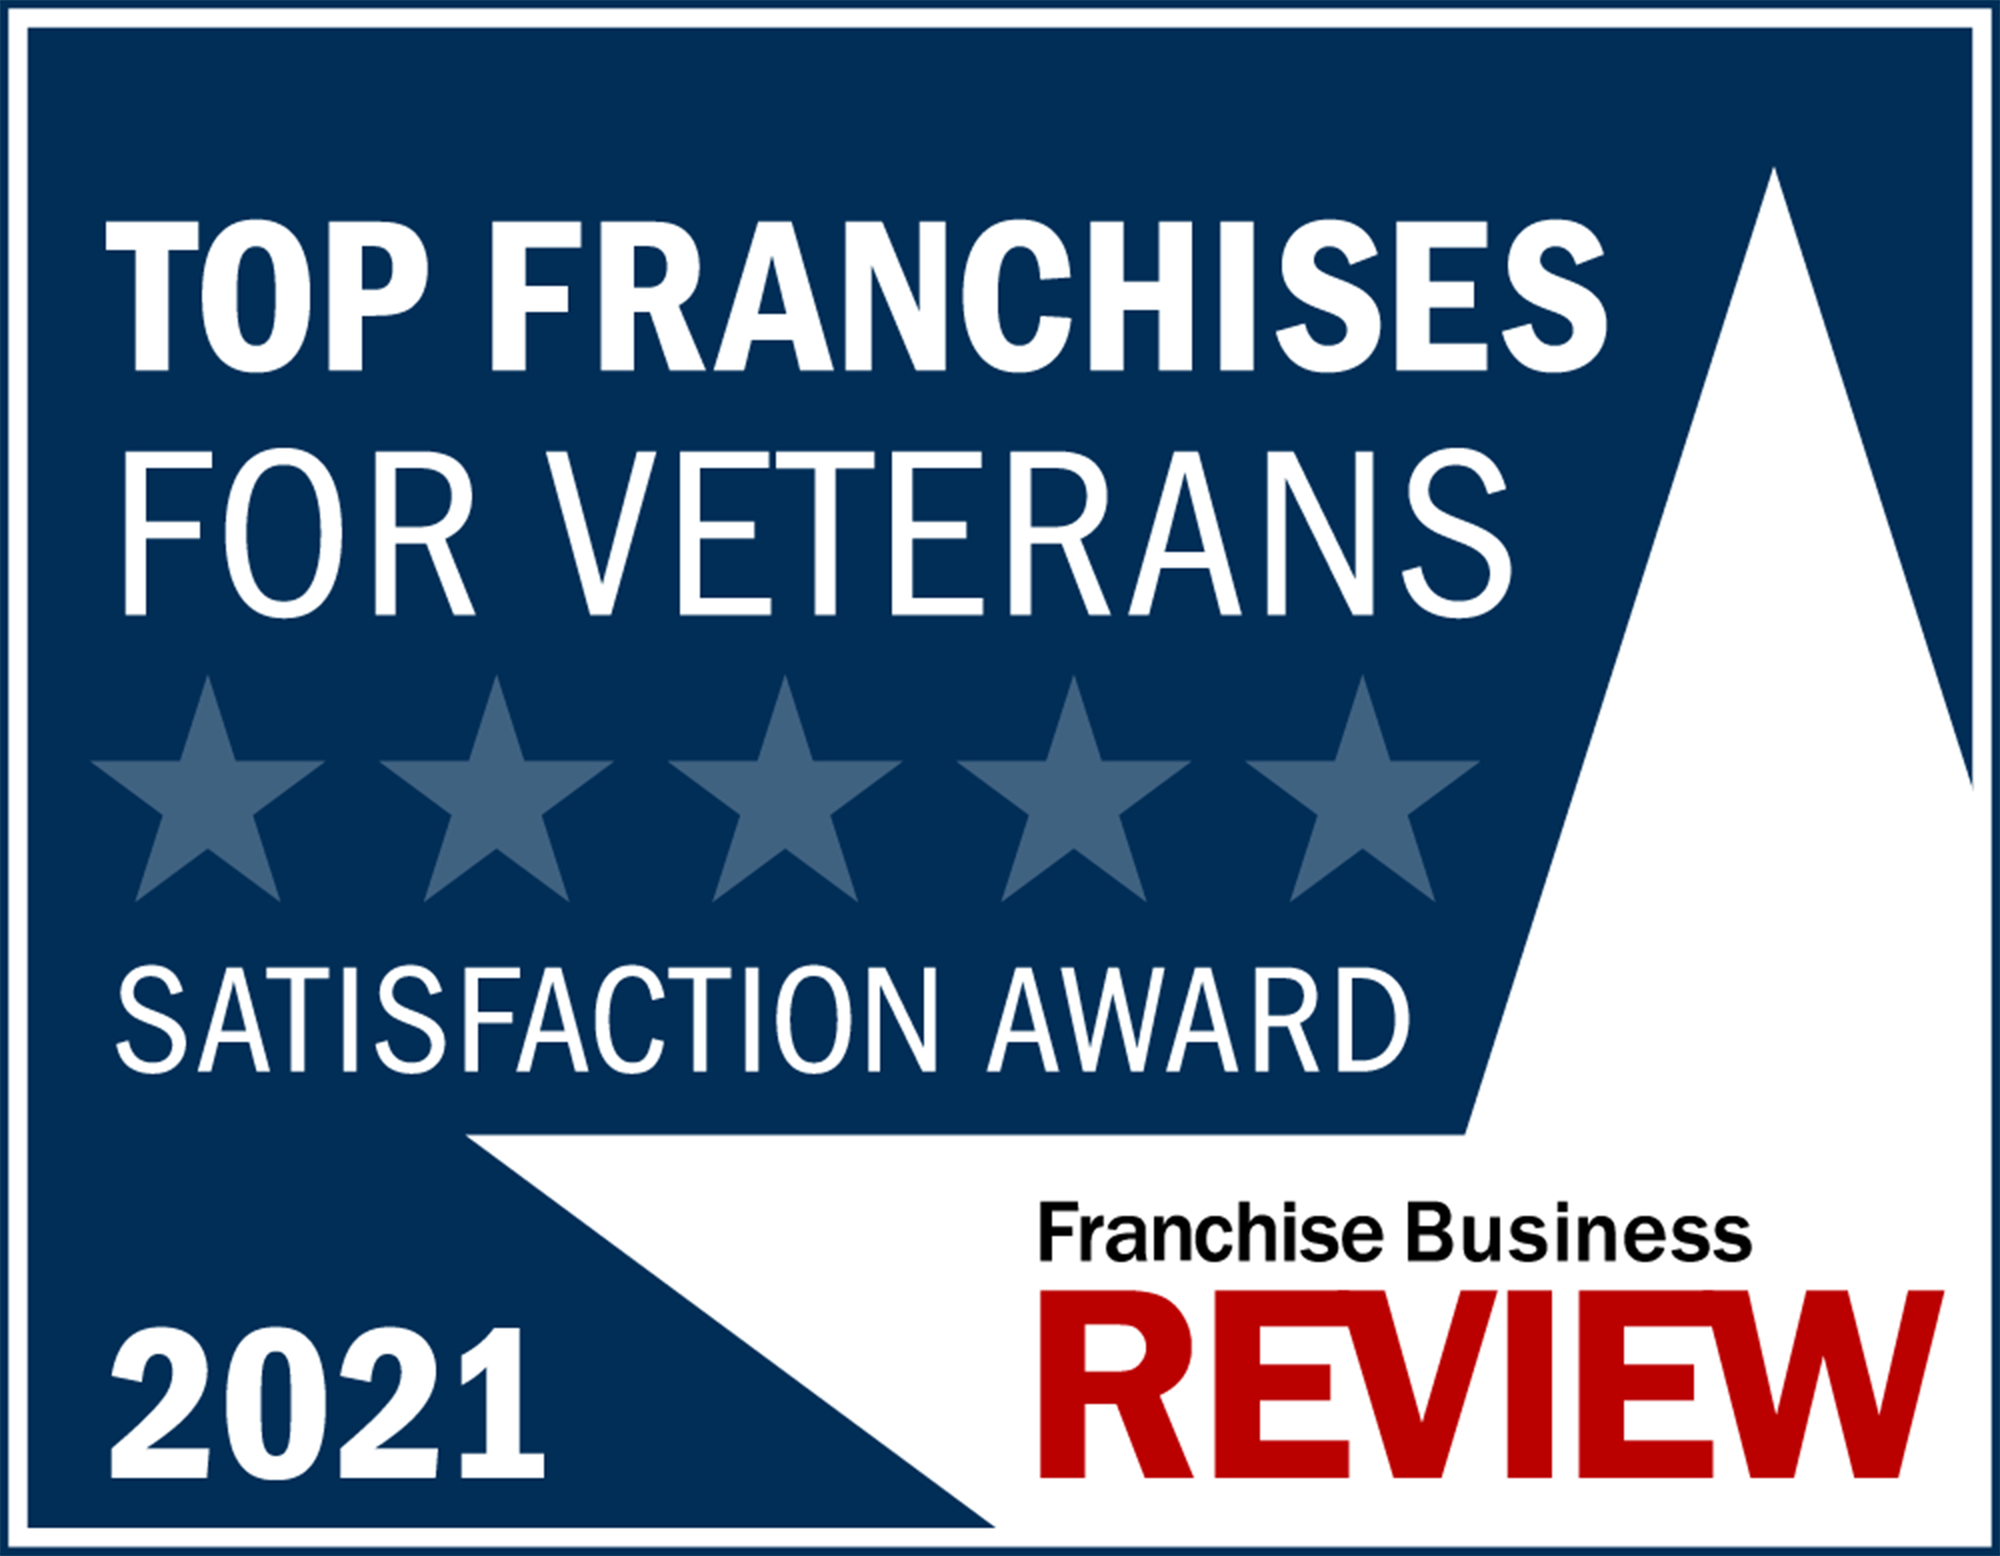 Entreprenuer Franchise 500 Top Franchise for Veterans -2021